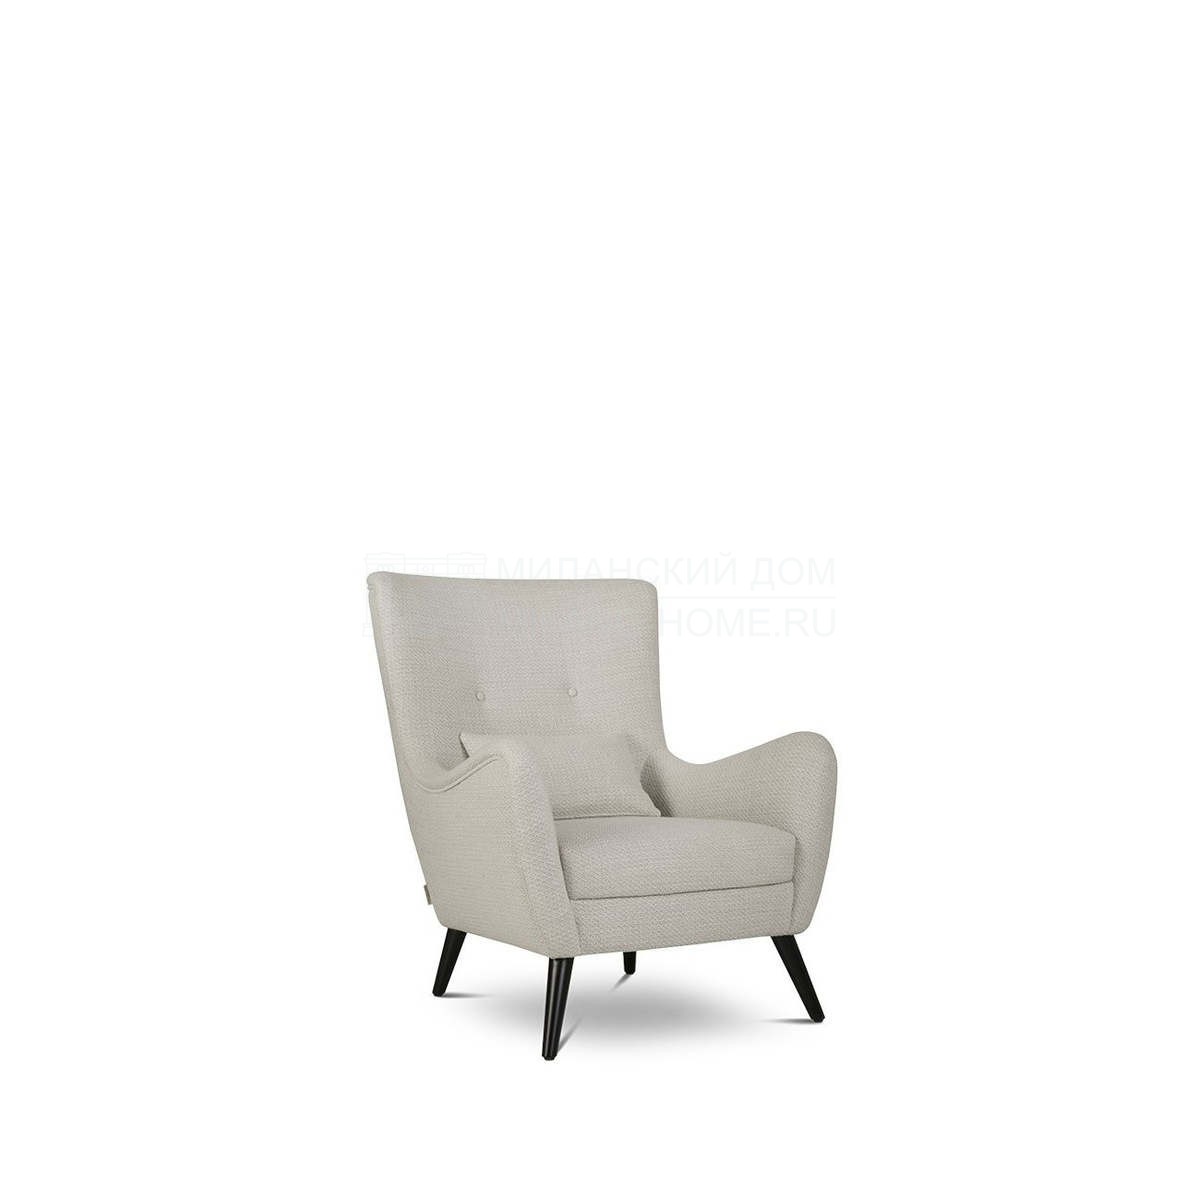 Кресло Maximo armchair из Франции фабрики HAMILTON CONTE